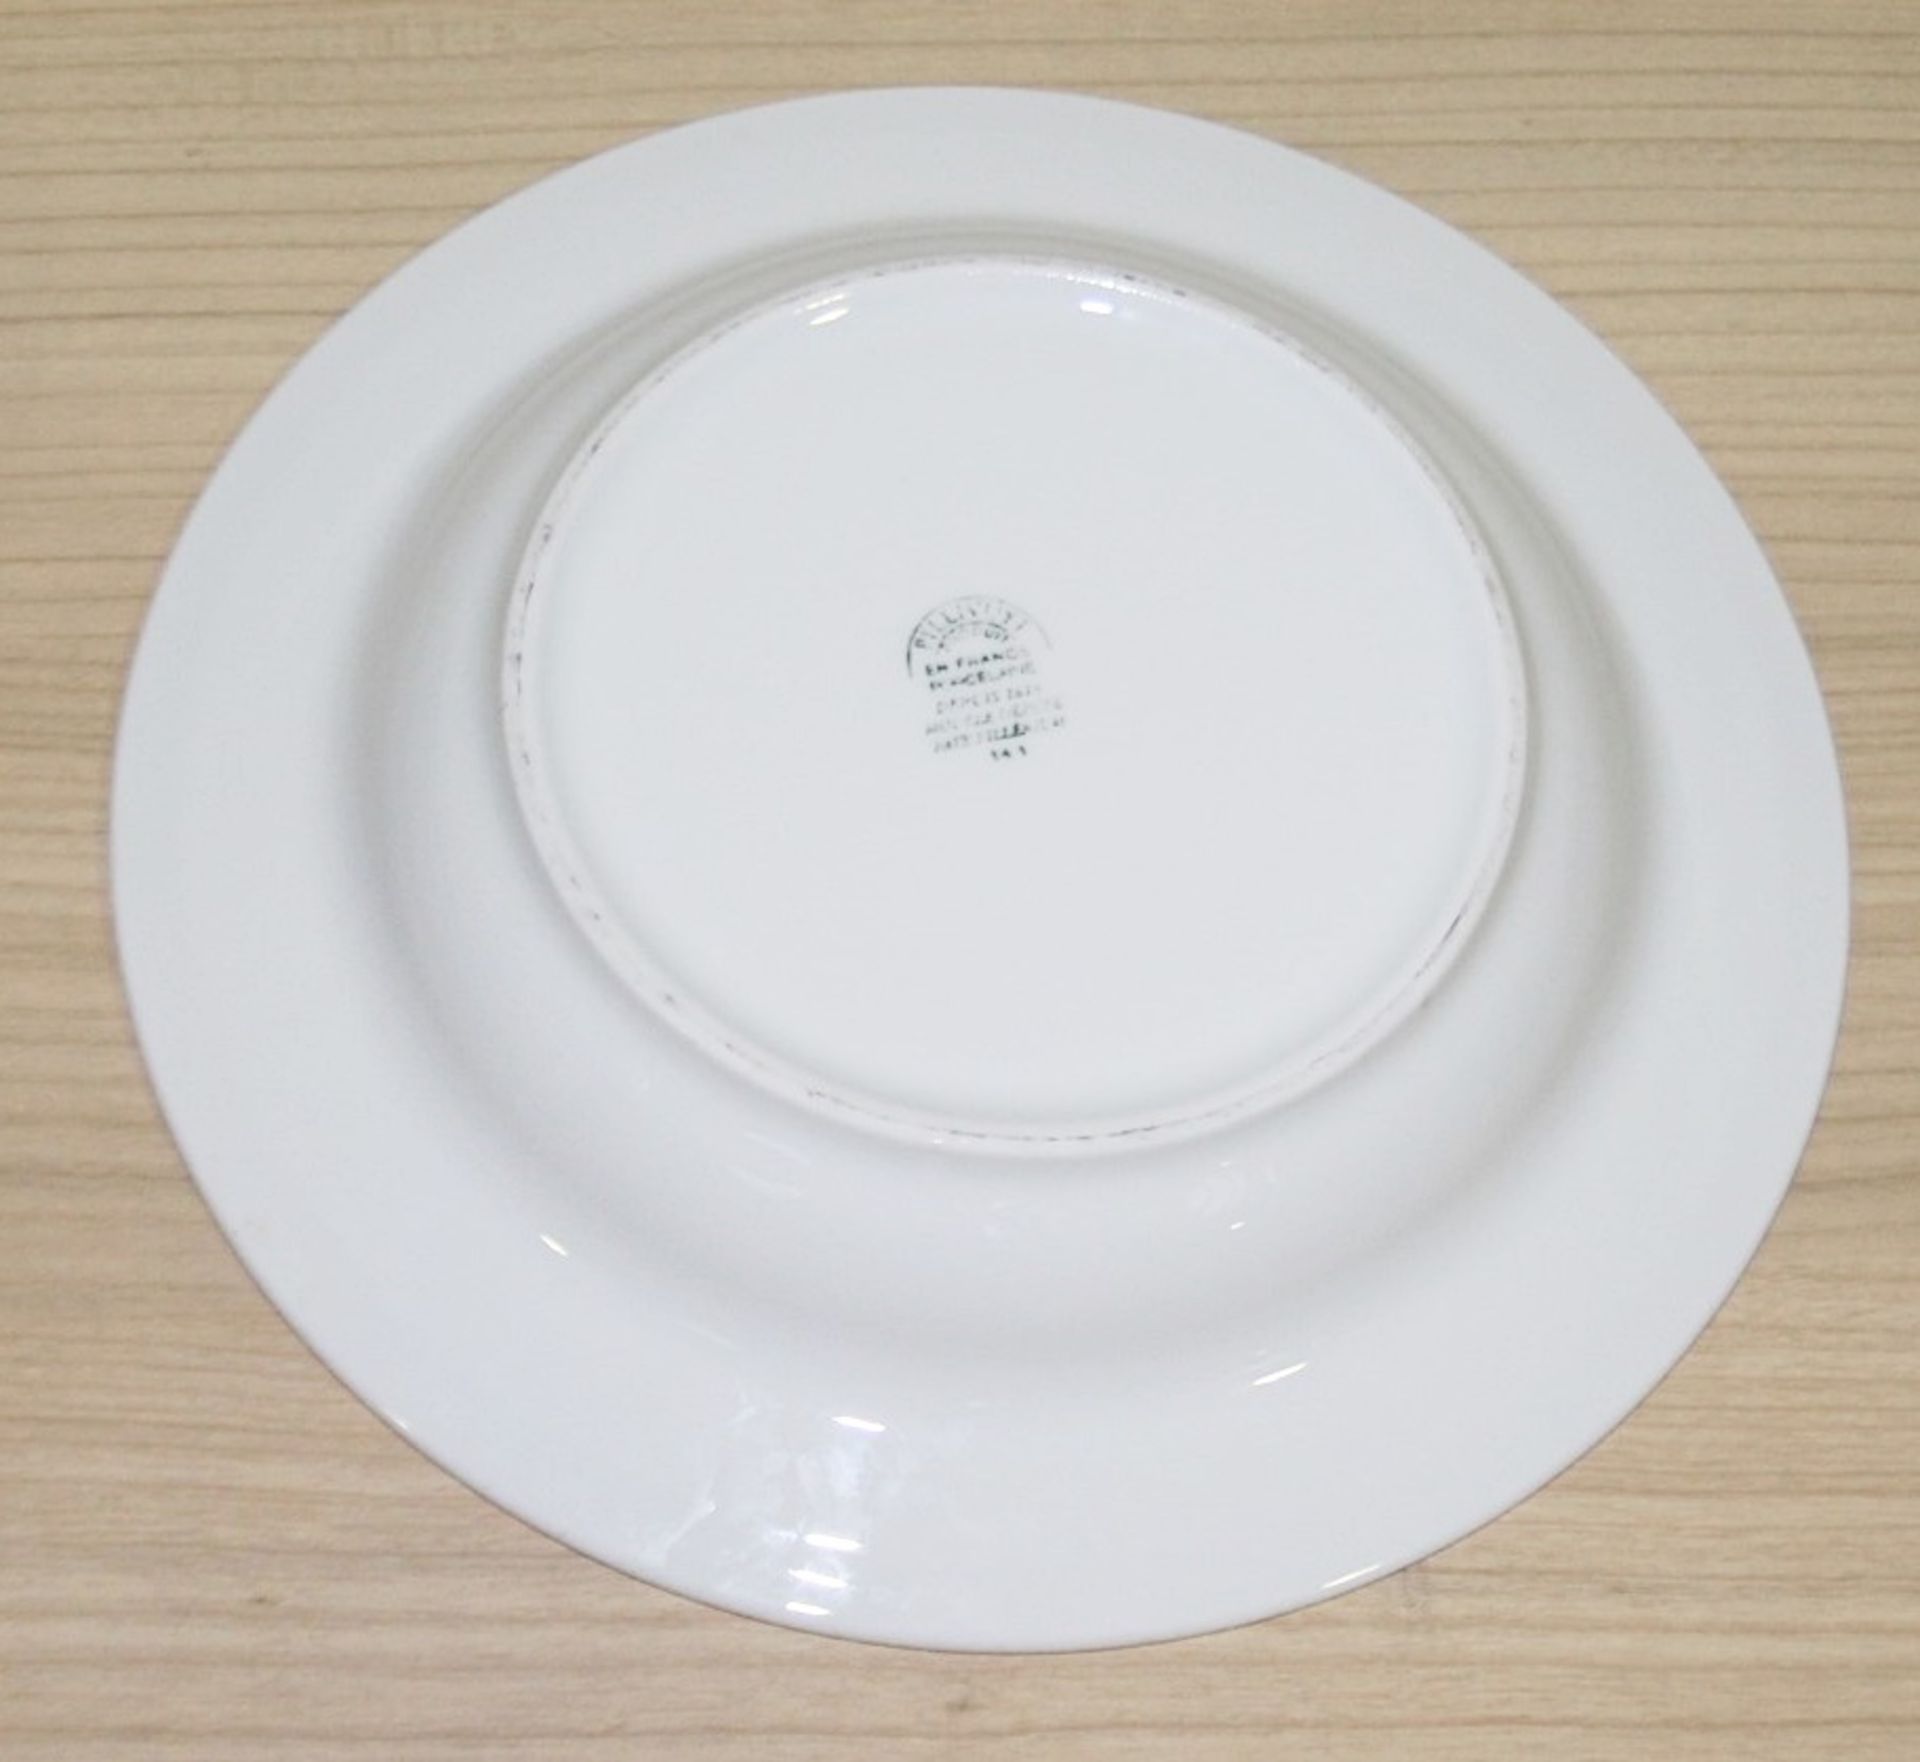 40 x PILLIVUYT Porcelain 21.7cm Small Commercial Porcelain Pasta / Soup Bowls With 'Famous Branding' - Image 2 of 5